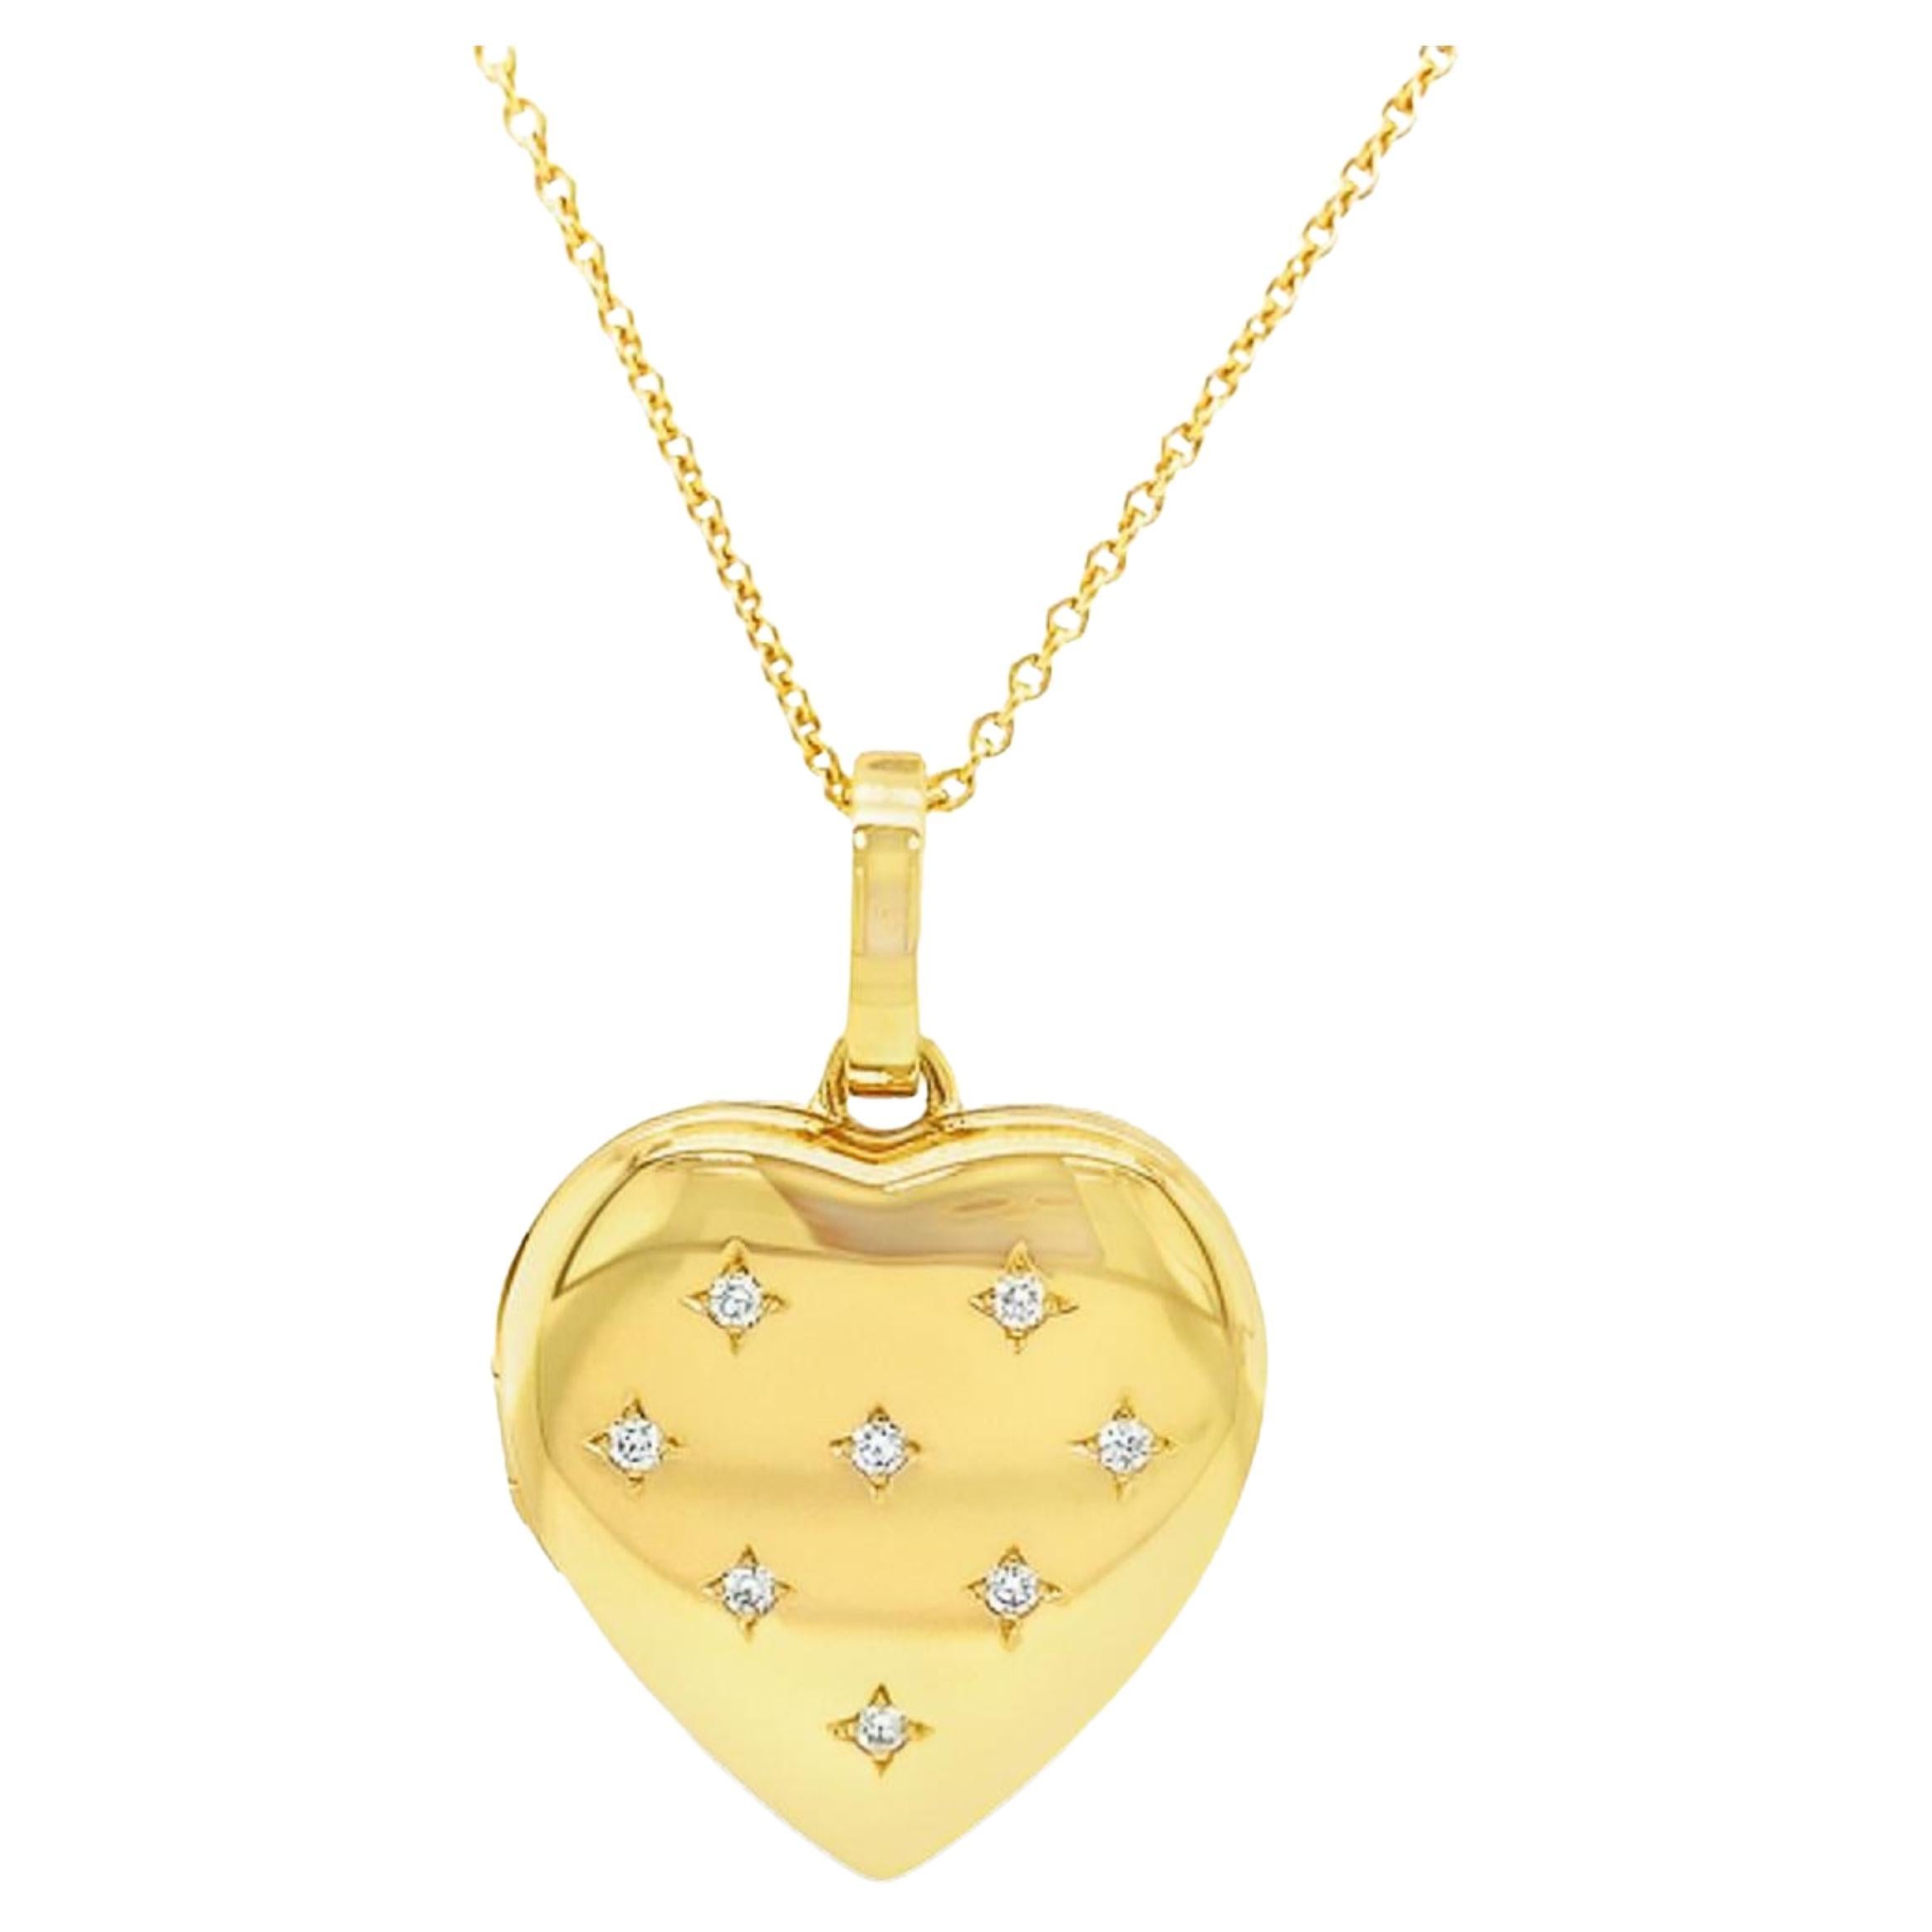 Herzförmiger Medaillon-Anhänger von Victor Mayer, 18k Gelbgold, 8 Diamanten 0,16 Karat